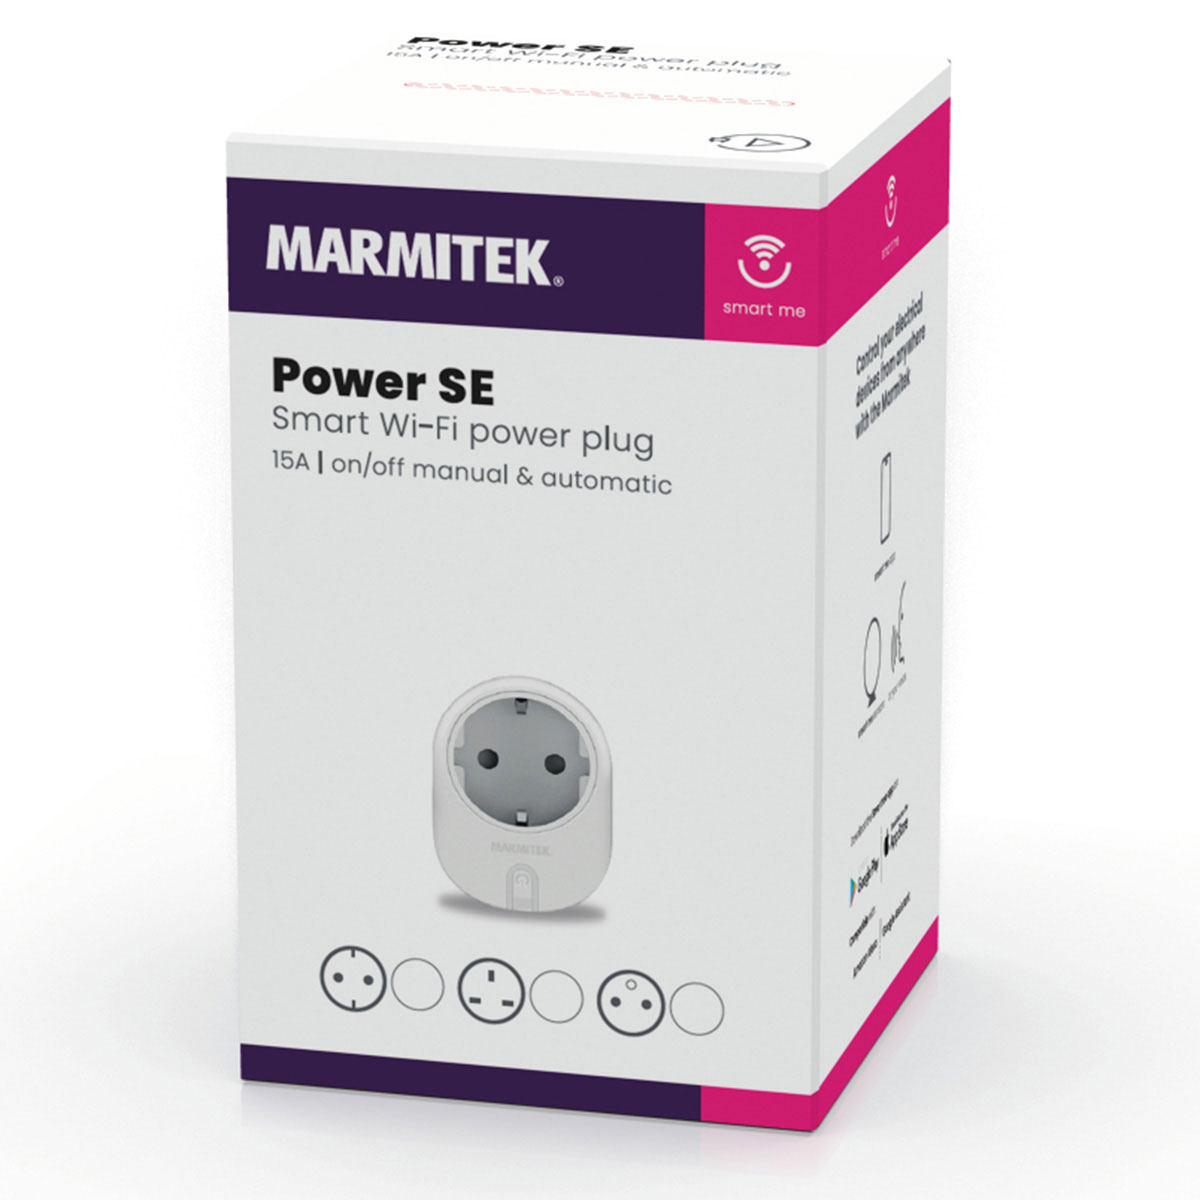 Marmitek Power SE